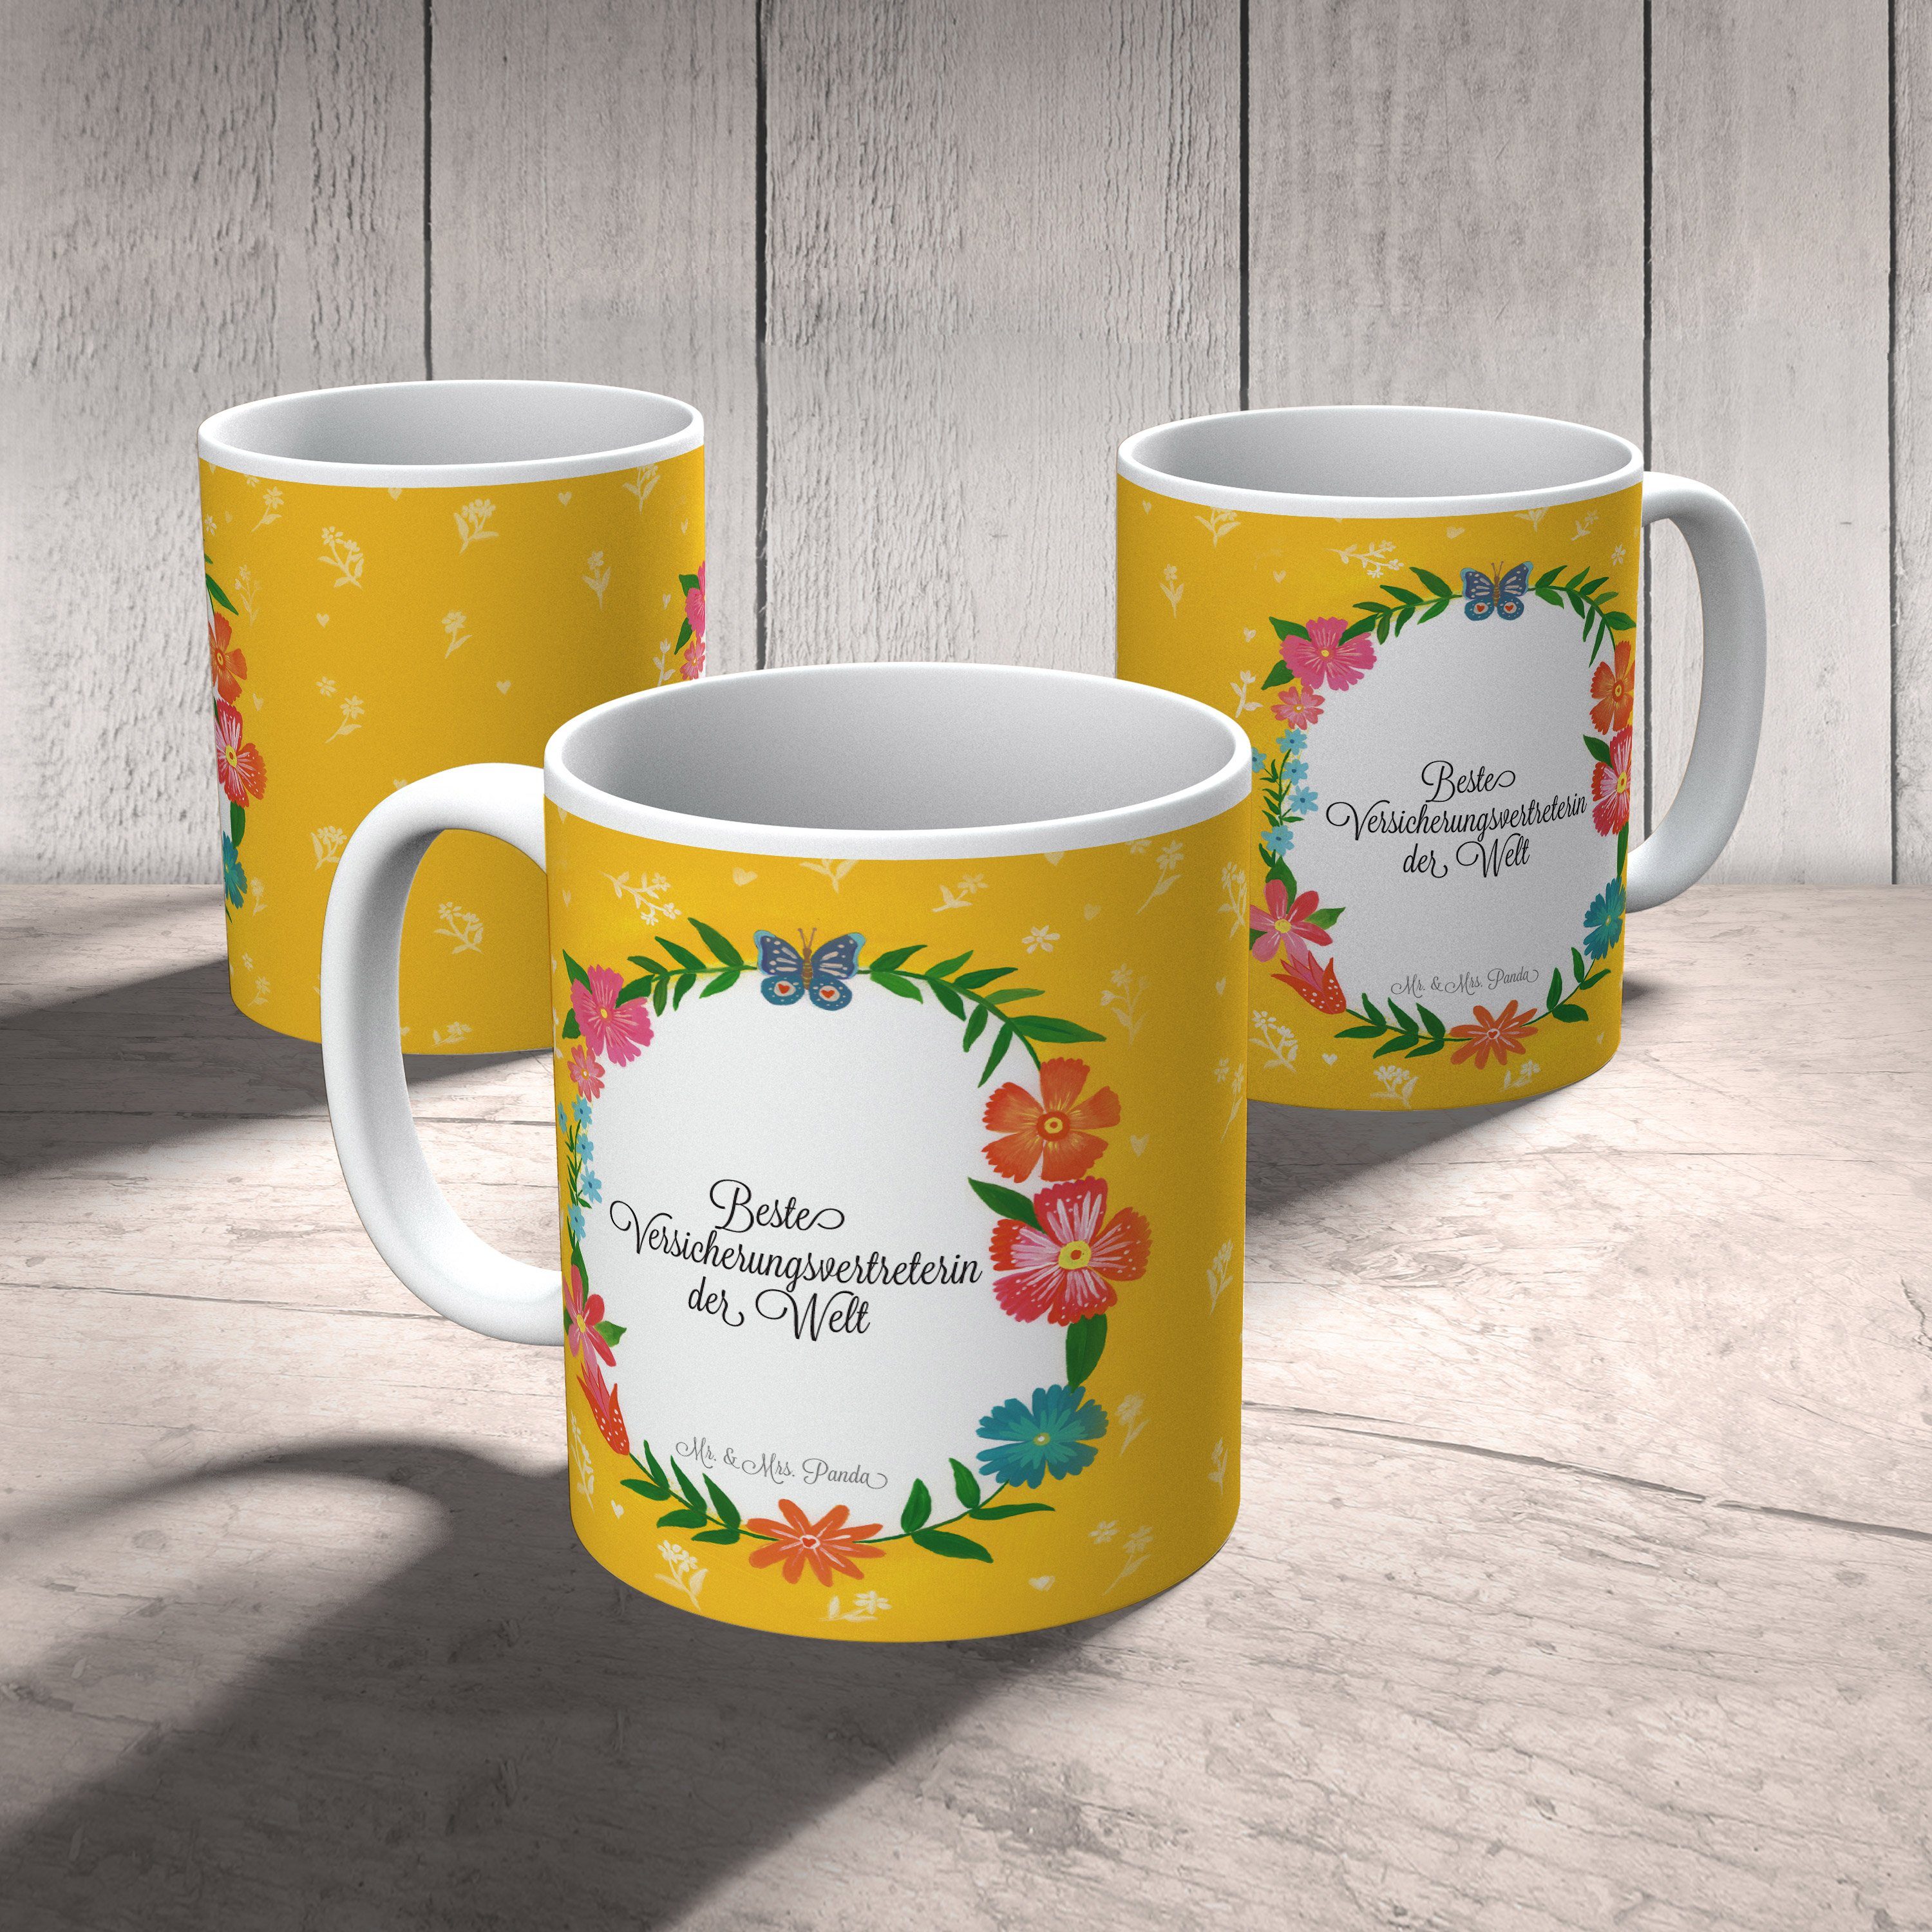 Mr. & Mrs. Panda Tasse - Keramik Motive, Versicherungsvertreterin Kaffeetasse, Rente, Geschenk, Tasse